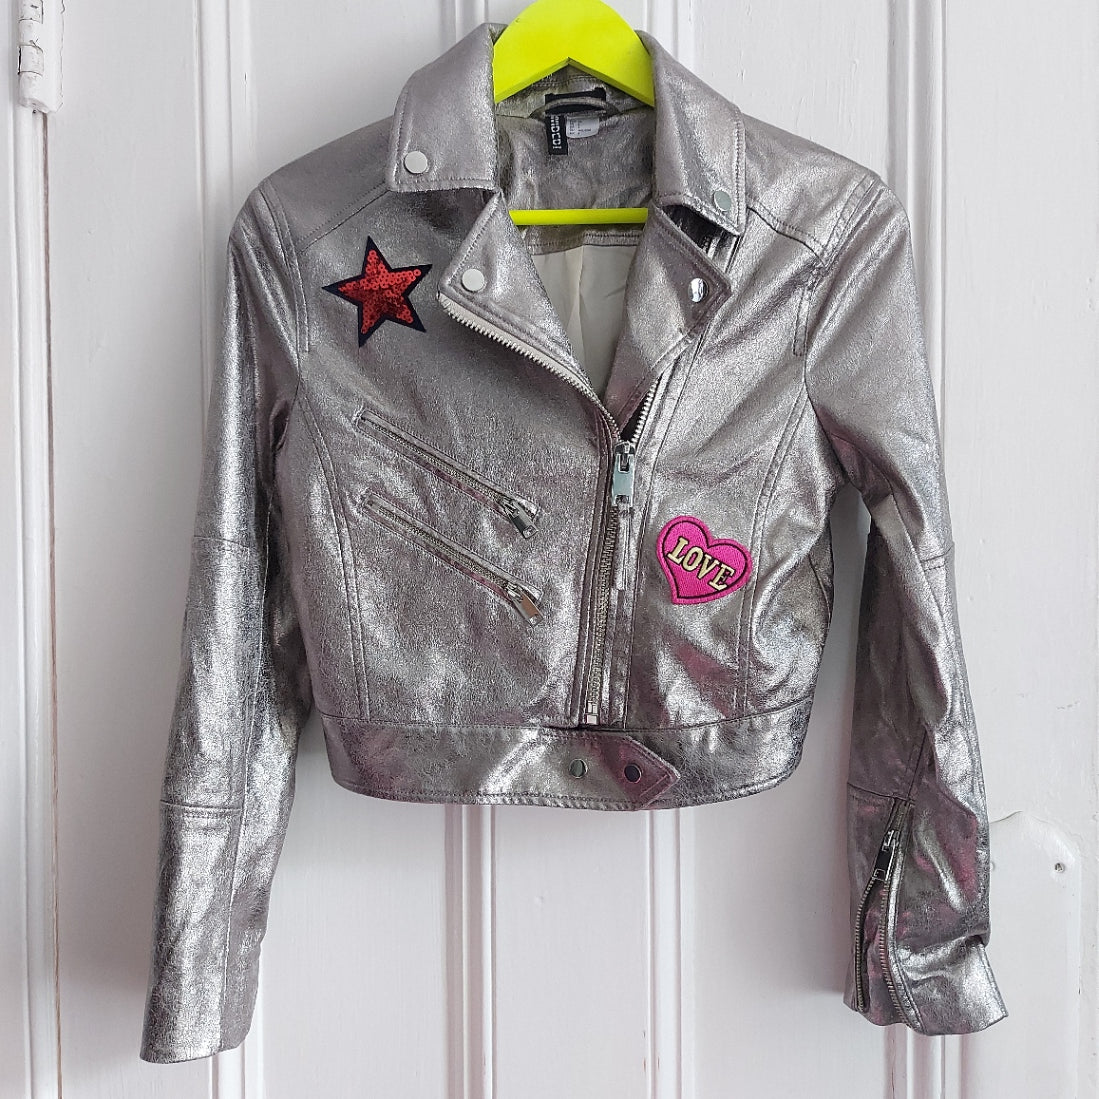 Kids Metallic rainbow Wing Biker Jacket - Size 4 / Teens & Tweens